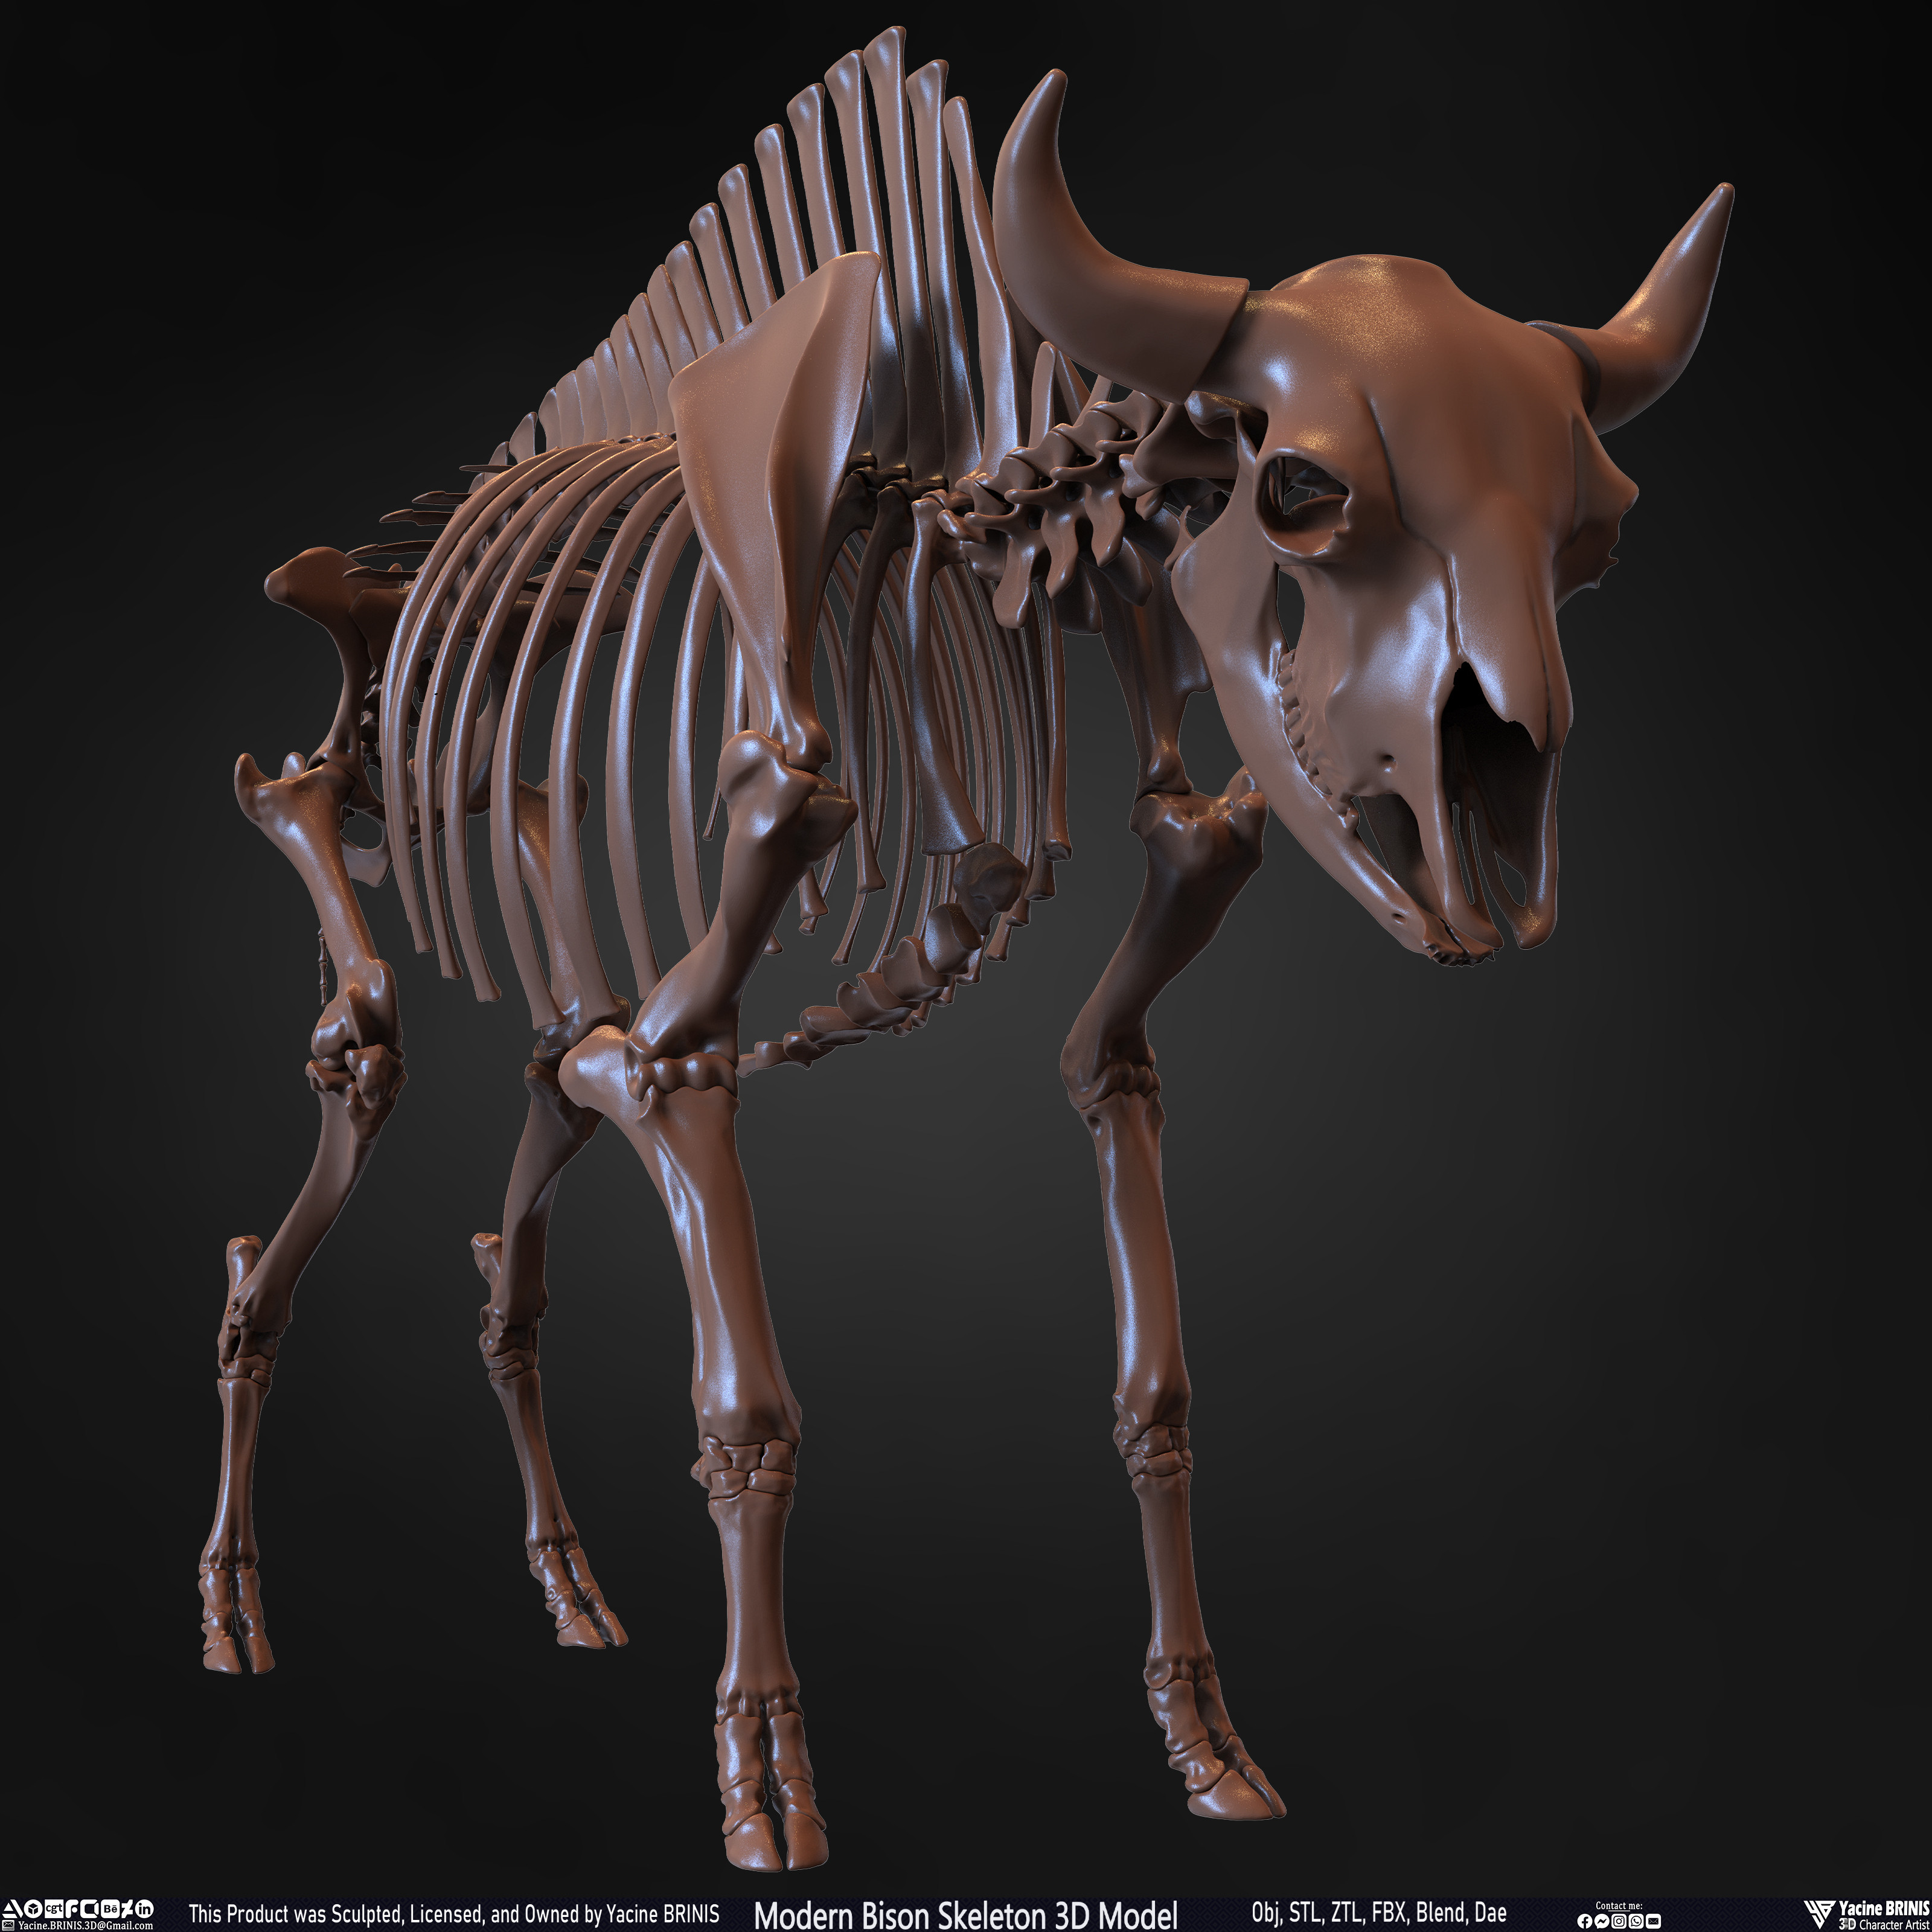 Modern Bison Skeleton 3D Model Sculpted by Yacine BRINIS Set 006